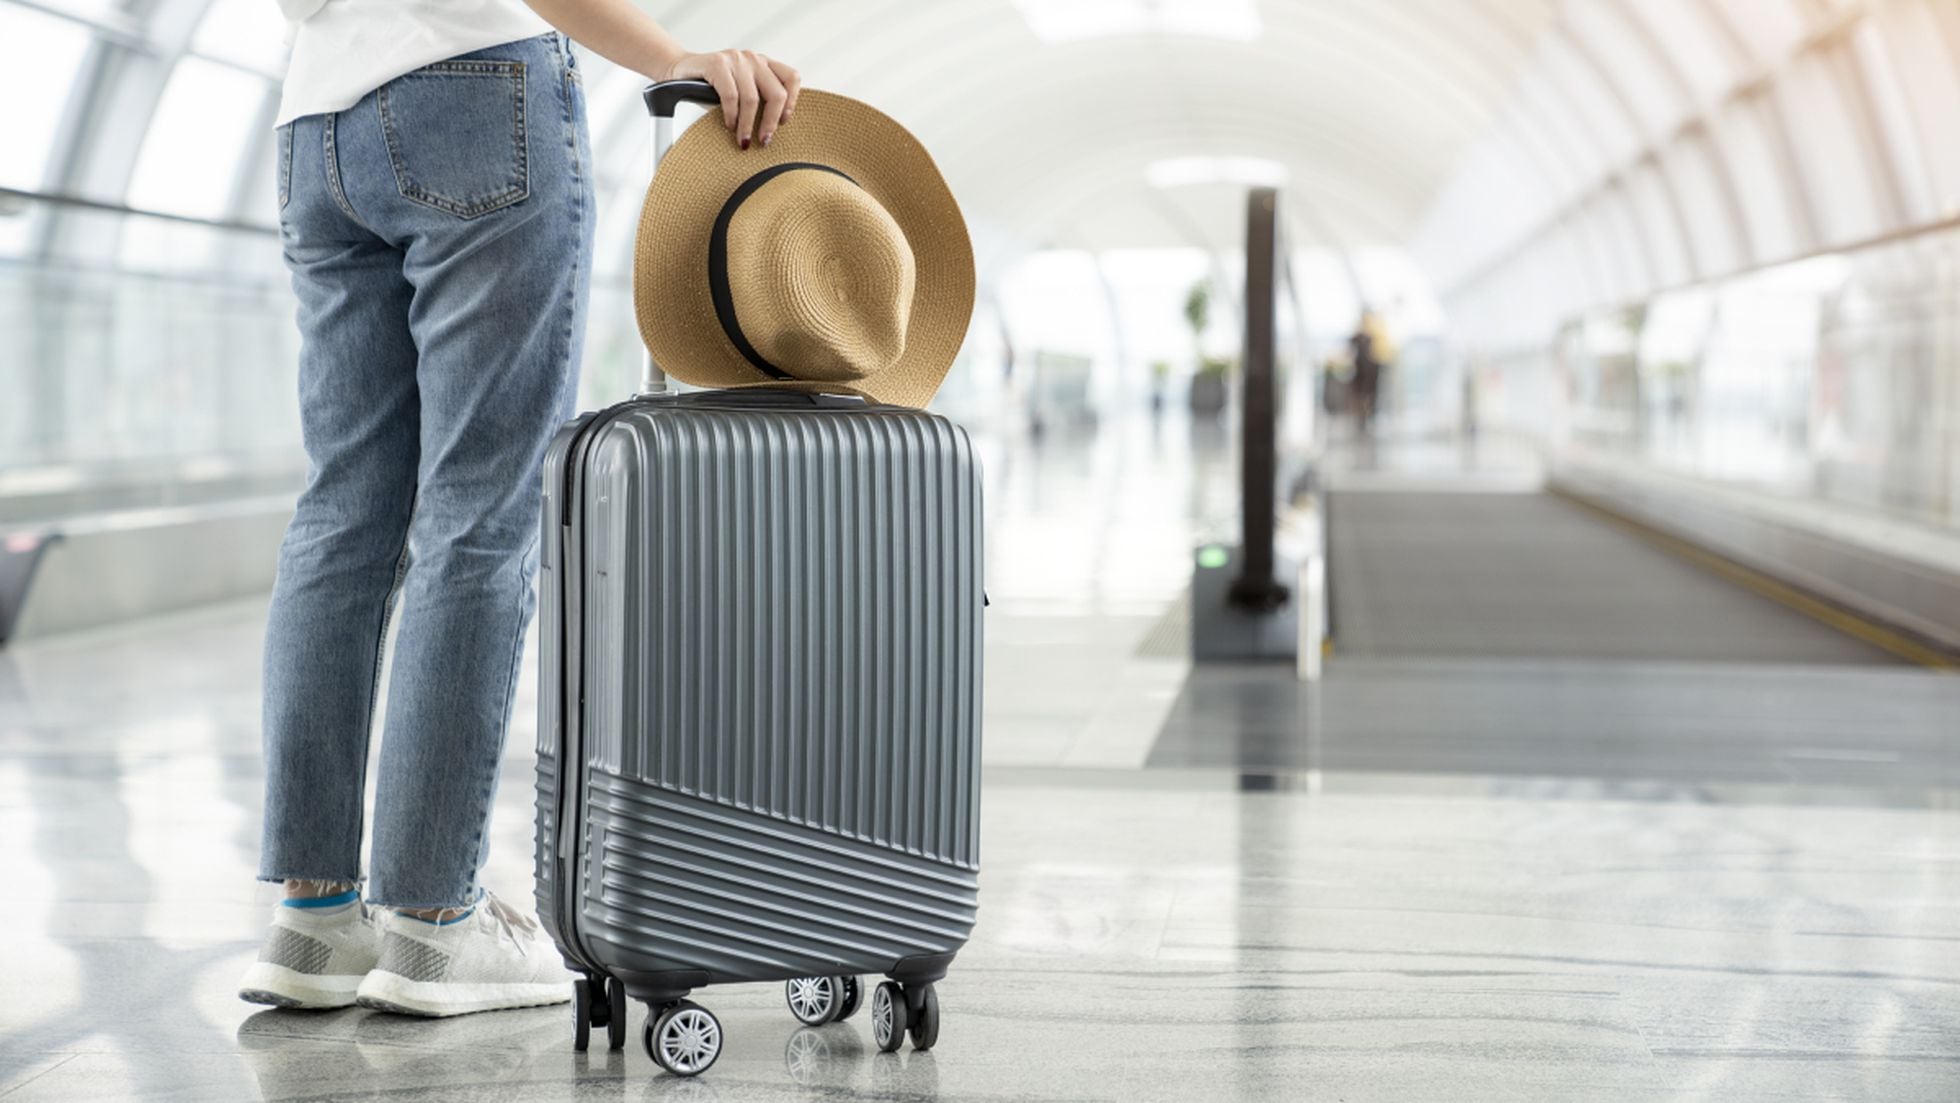 Siete maletas de cabina y bolsas mano para viajar tranquilo en tus escapadas en avión | Escaparate | PAÍS